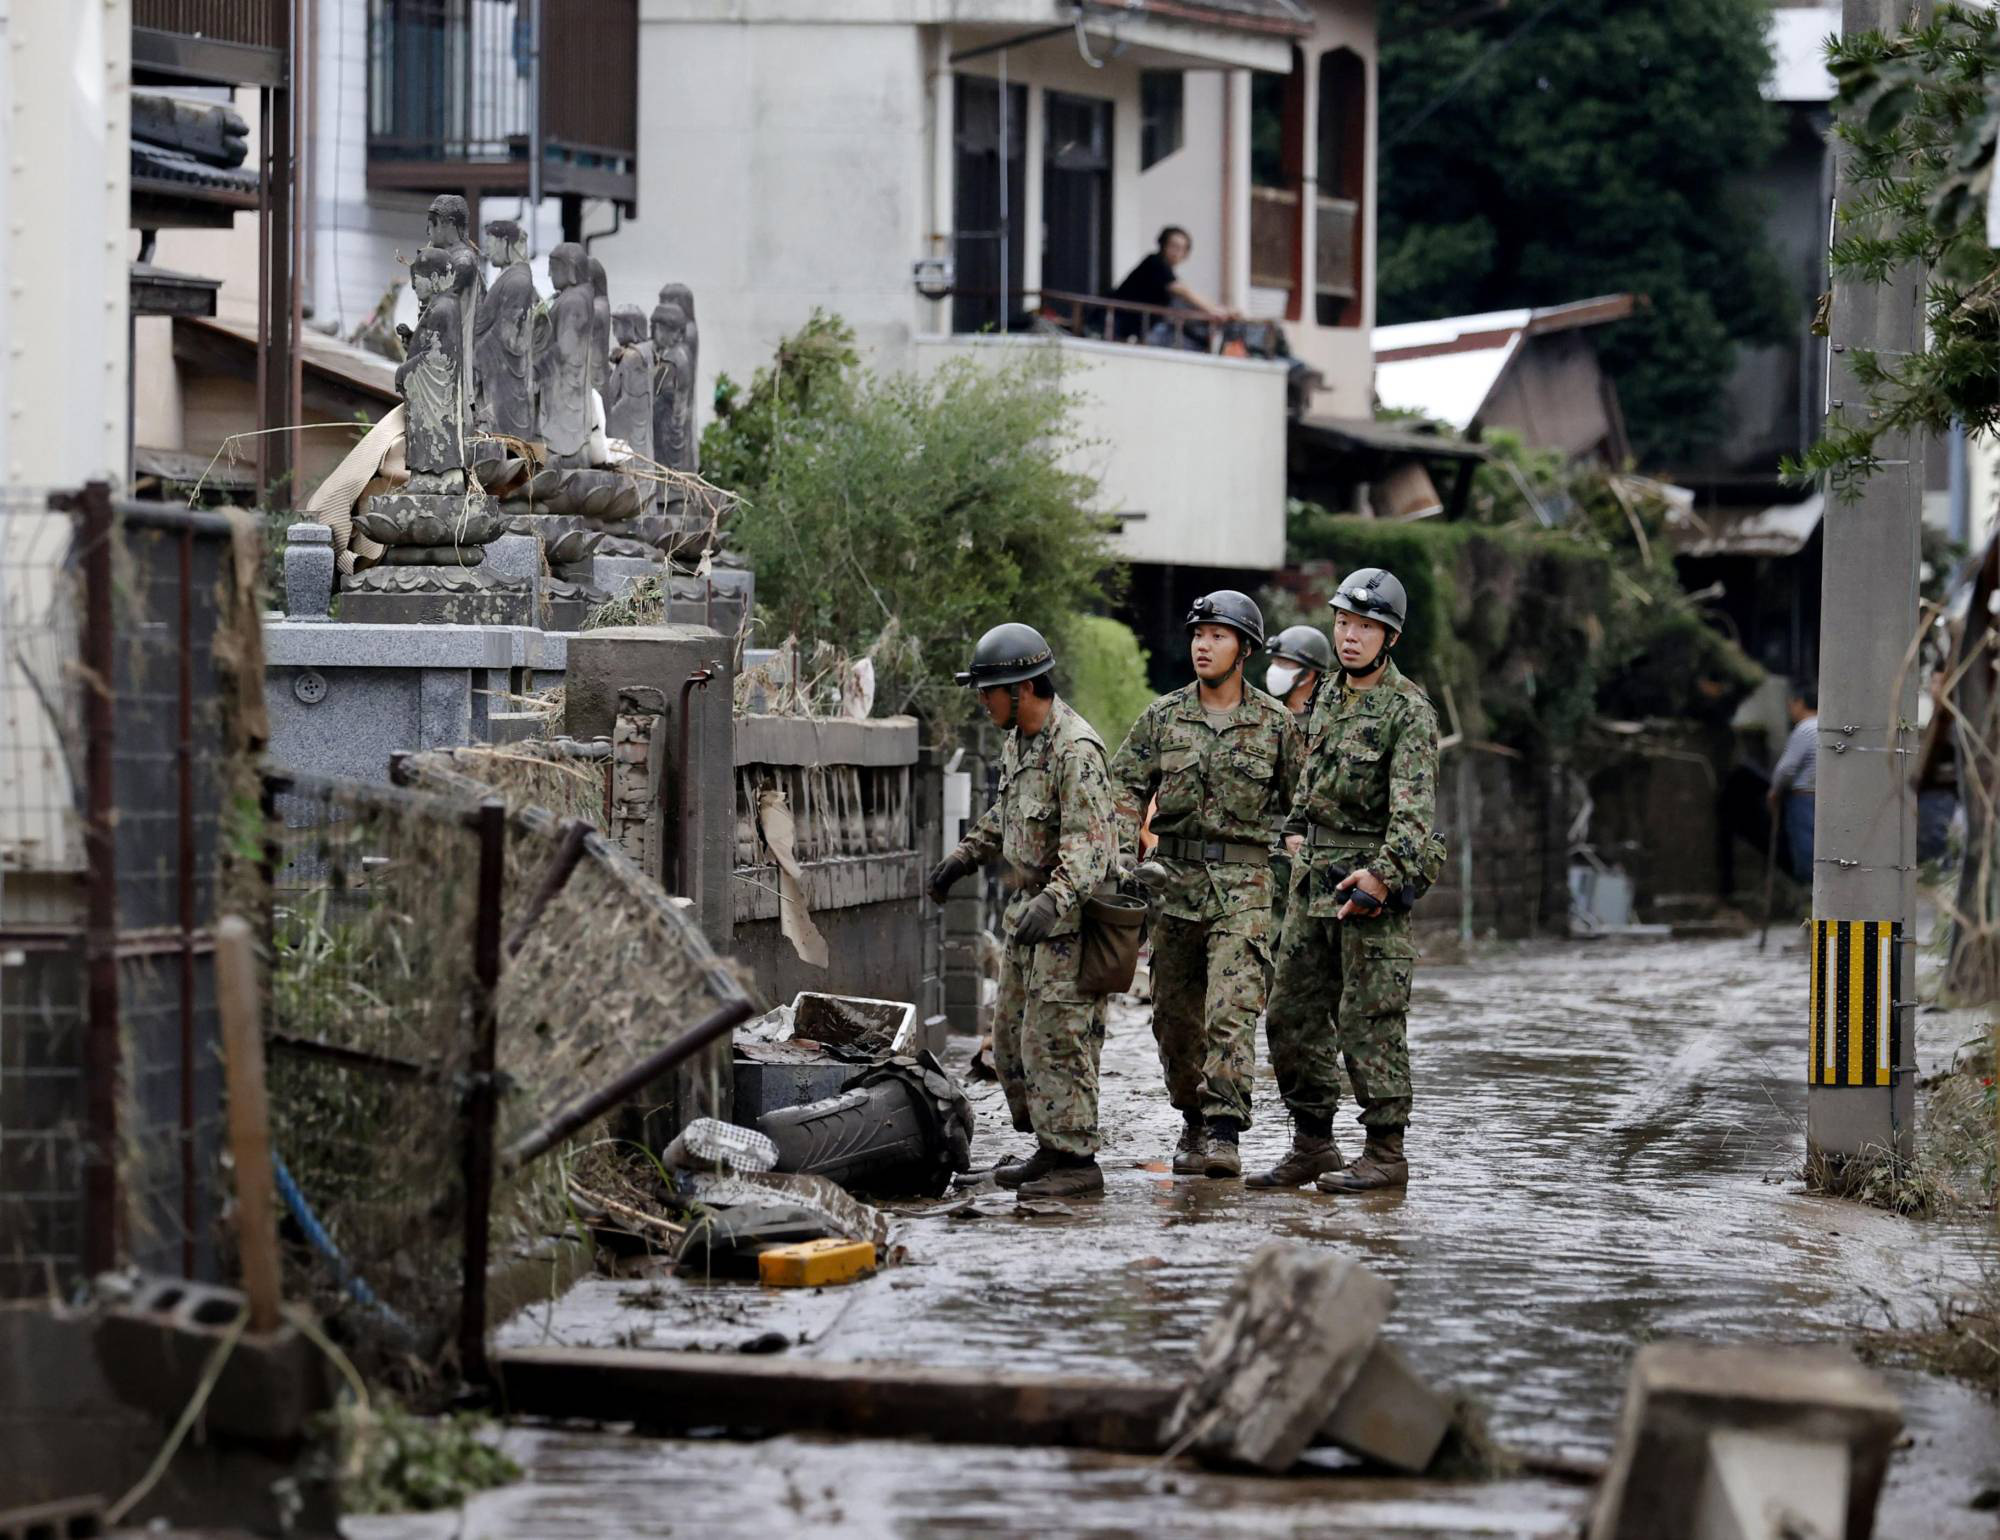 Chùm ảnh lũ lụt nhấn chìm viện dưỡng lão, nuốt chửng nhà dân khiến ít nhất 20 người thiệt mạng ở Nhật Bản - Ảnh 8.